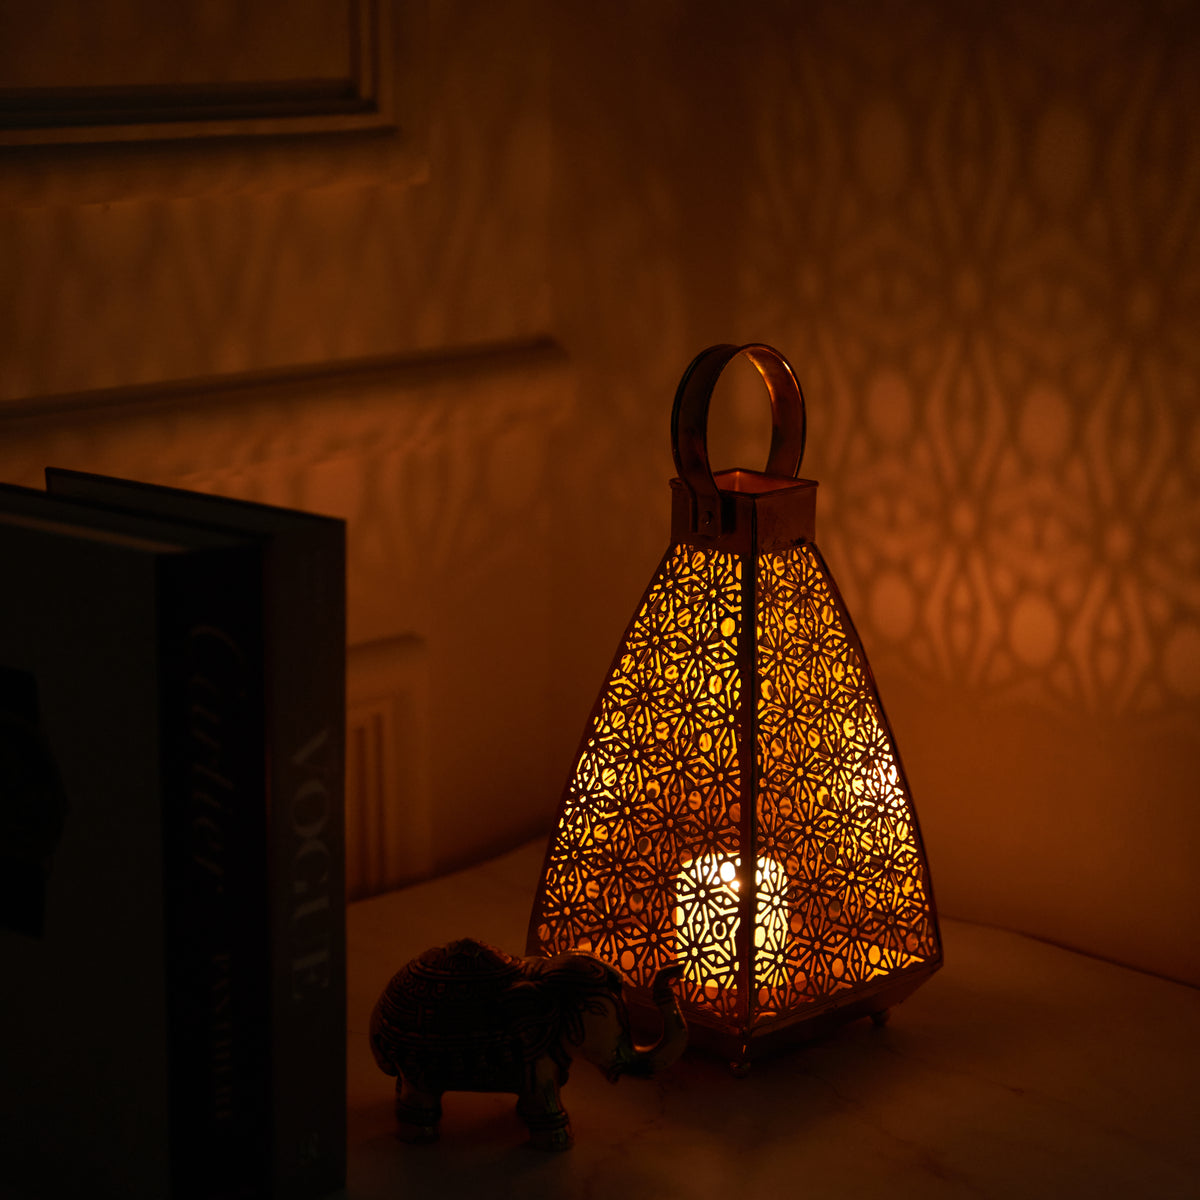 Snowflake Shaped Tea Light/Candle Metal Lantern Hanging